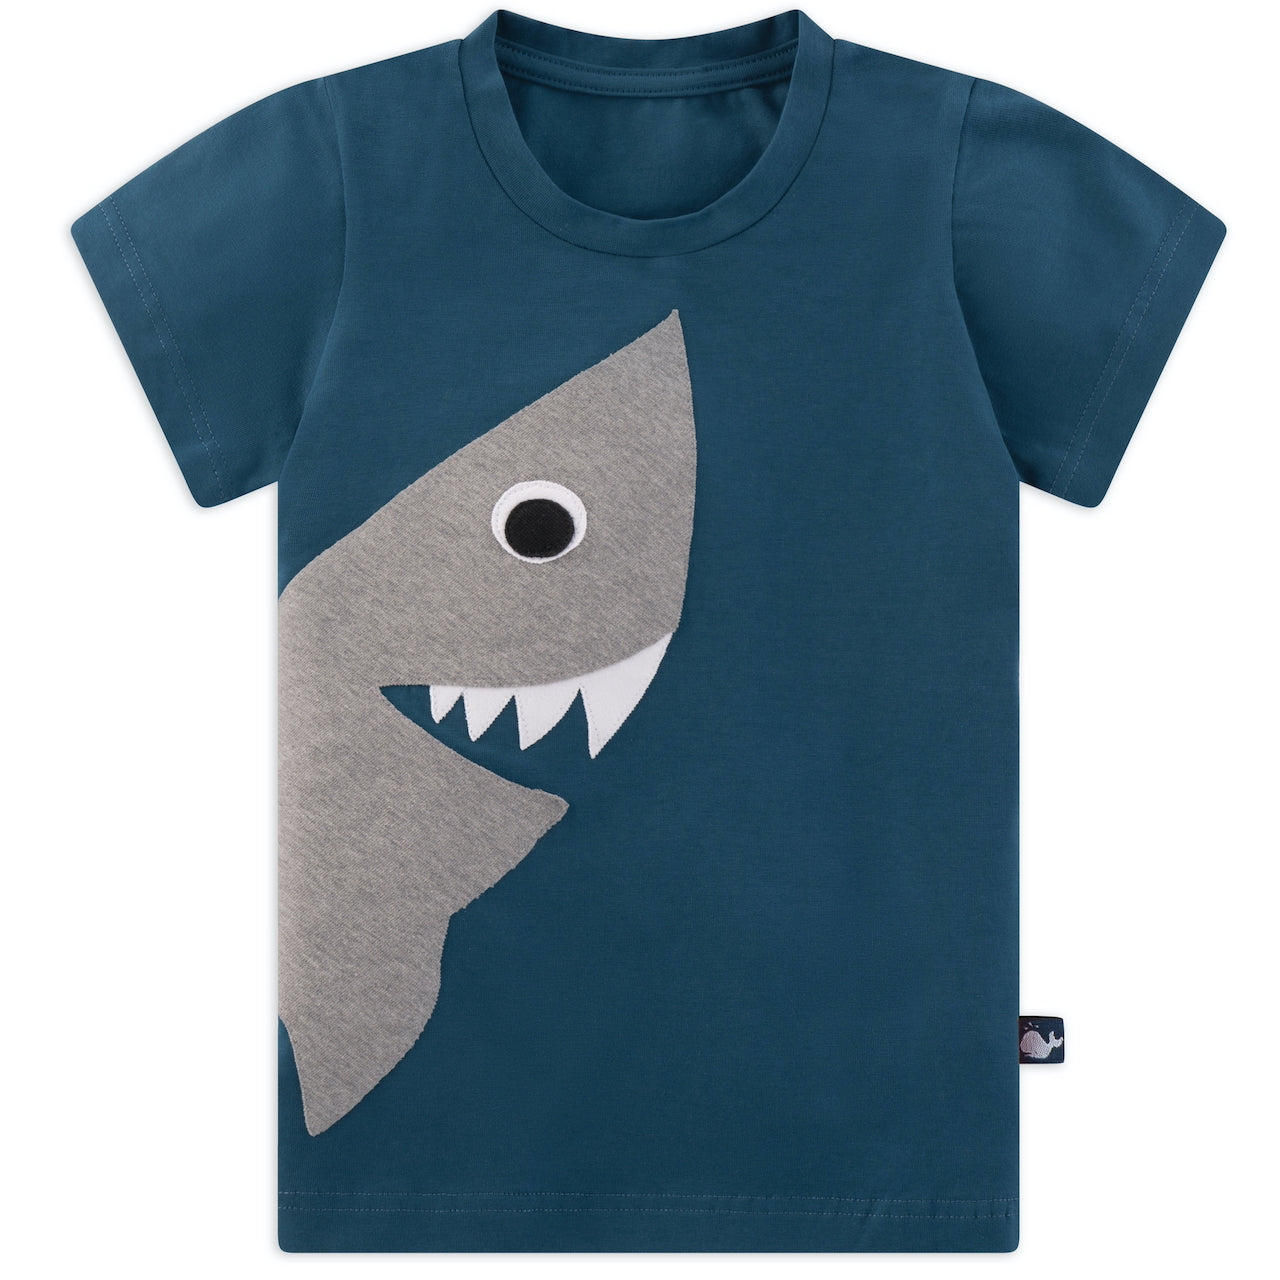 Kinder T-Shirt mit Hai aus 100% Biobaumwolle von internaht